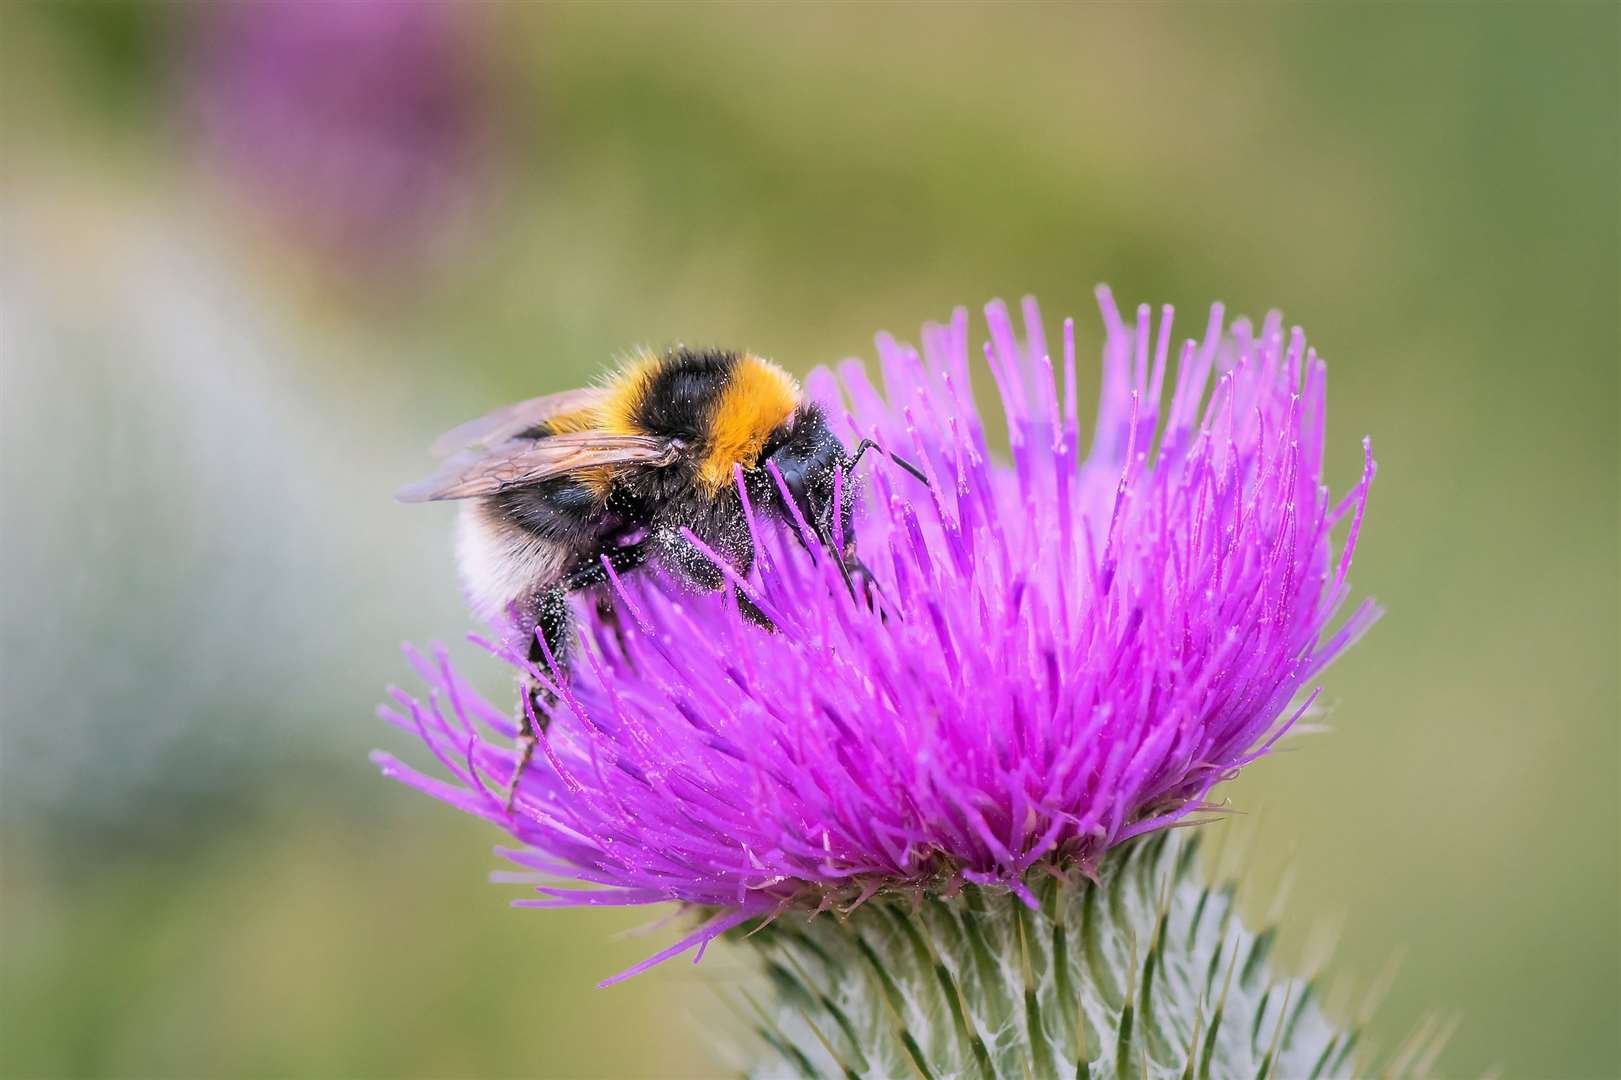 Garden bumblebee. Picture: Pieter Haringsma